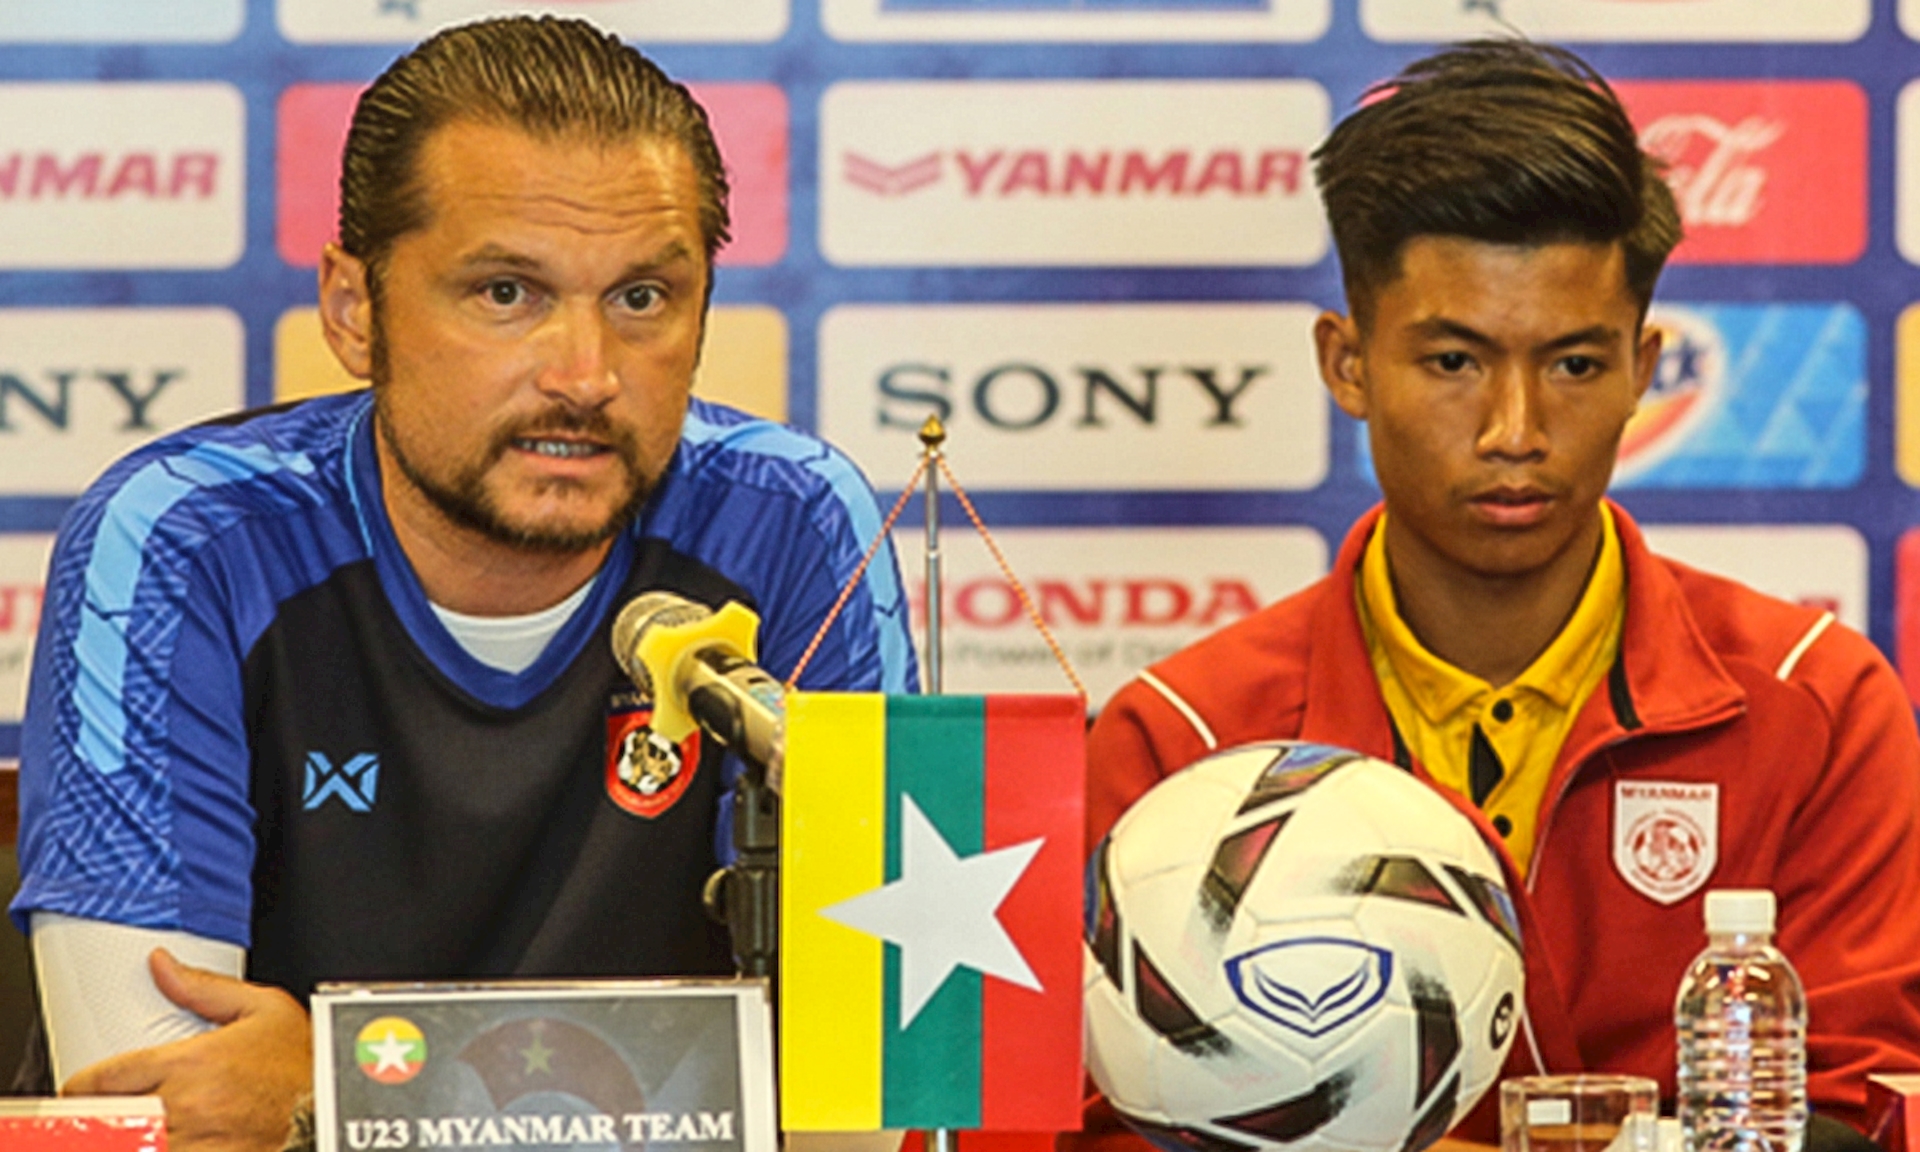 HLV U23 Myanmar tuyên bố sốc trước trận gặp U23 Việt Nam - Ảnh 1.